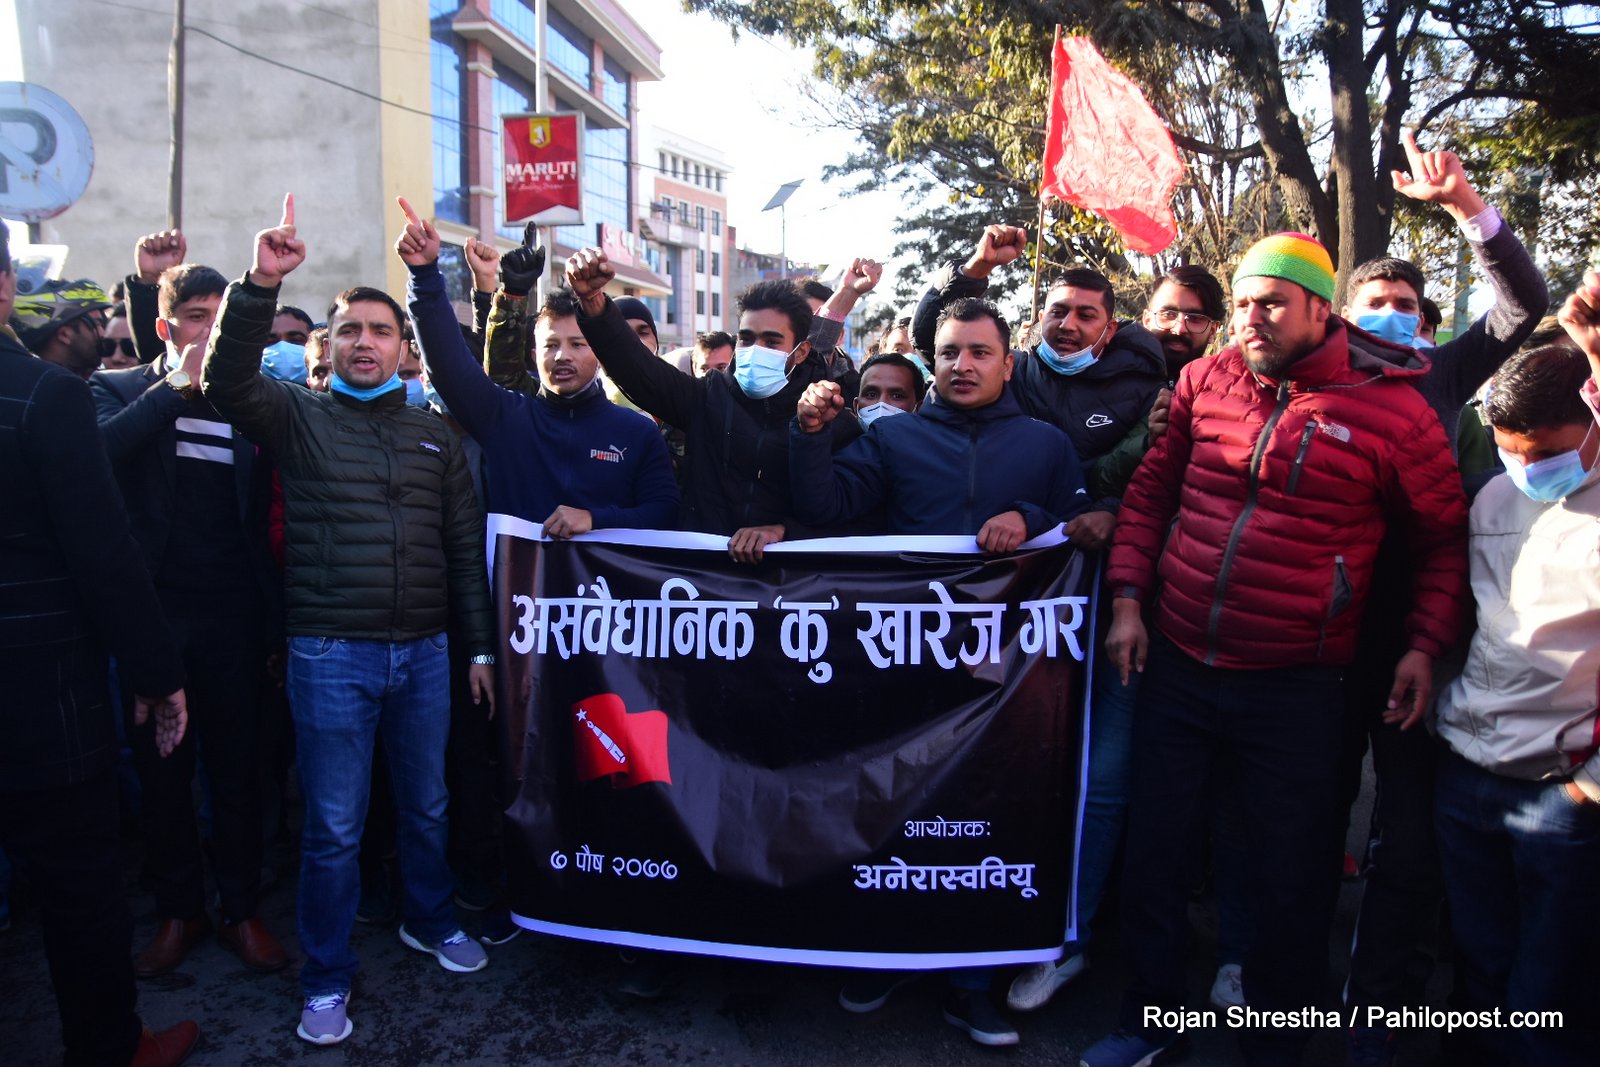 प्रचण्ड नेपाल समूहको अनेरास्ववियुद्वारा ओली सरकारविरुद्ध प्रदर्शन